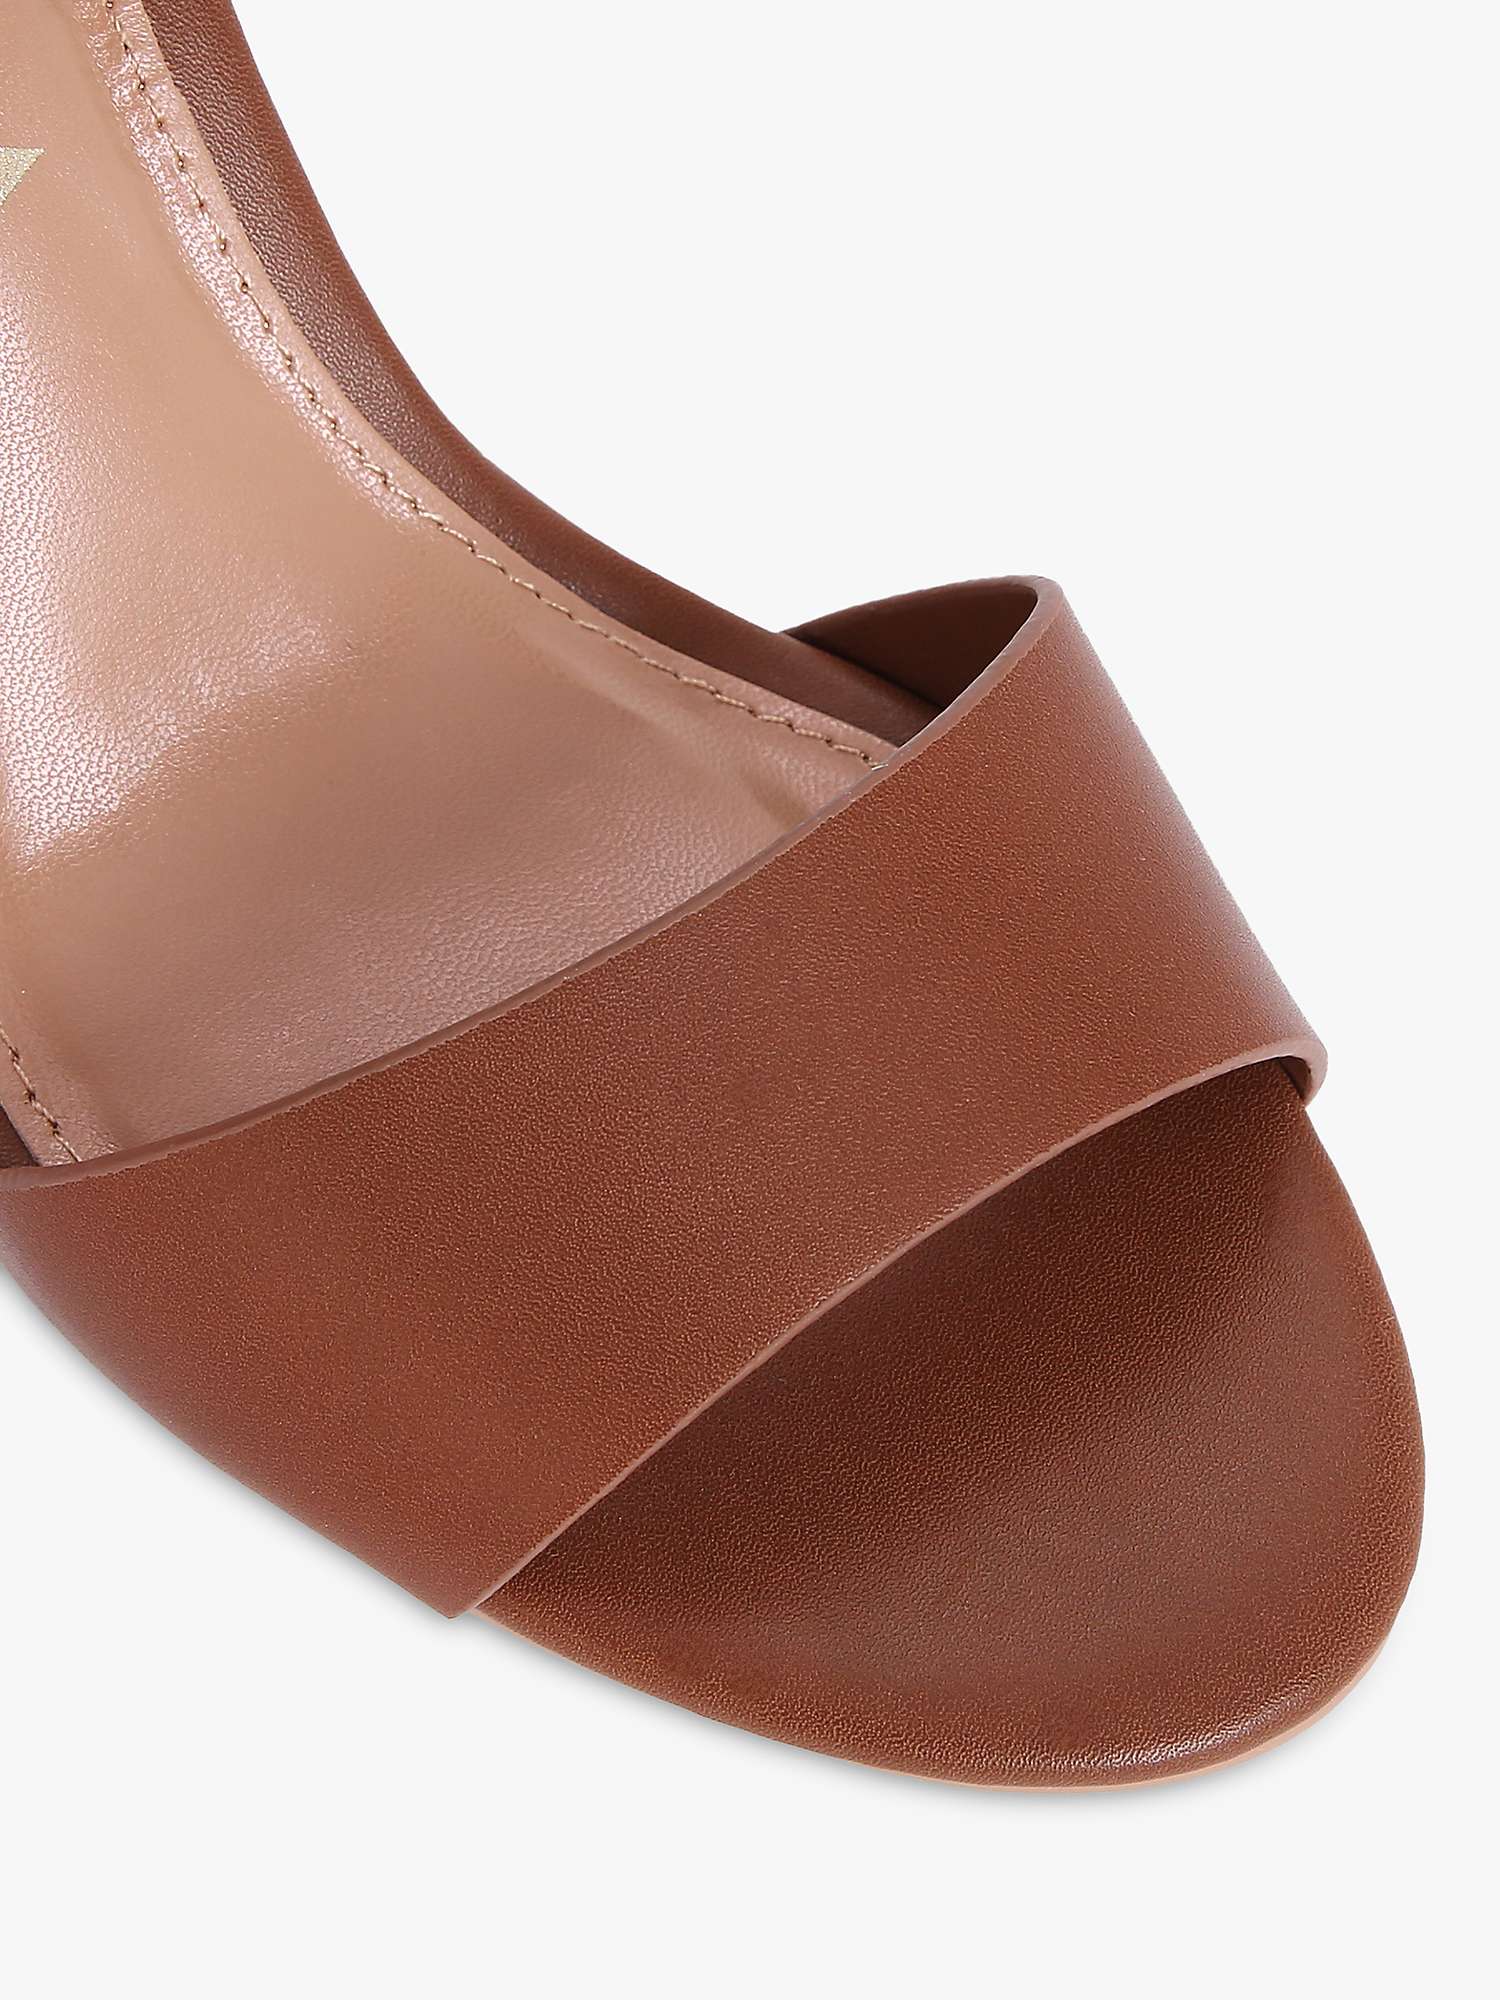 Buy Carvela Sadie Heeled Sandals Online at johnlewis.com